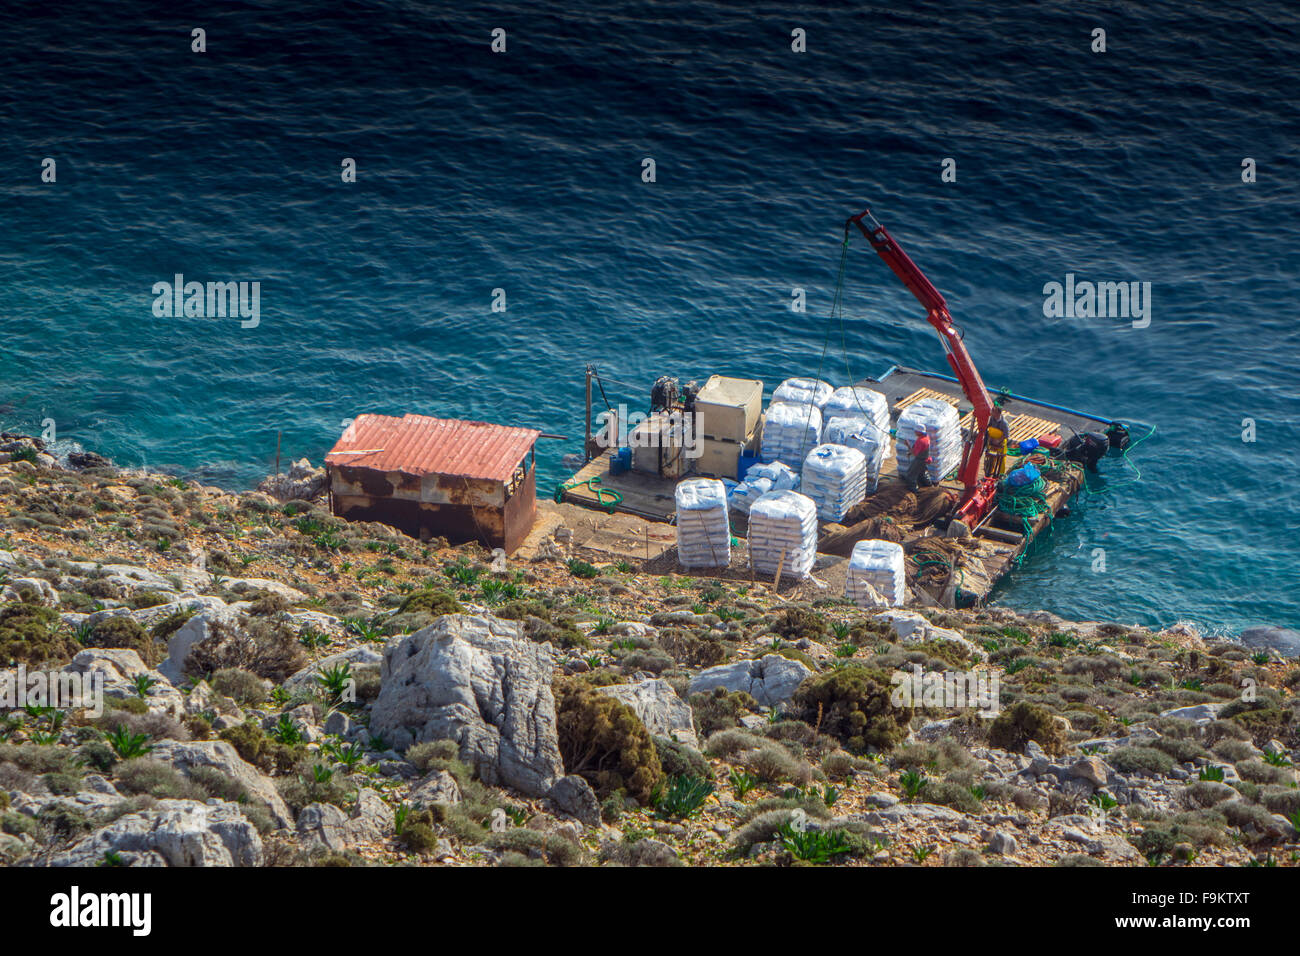 Radeau avec grue d'alimentation fournissant à l'élevage de poissons au large de Kalymnos, Grèce Banque D'Images